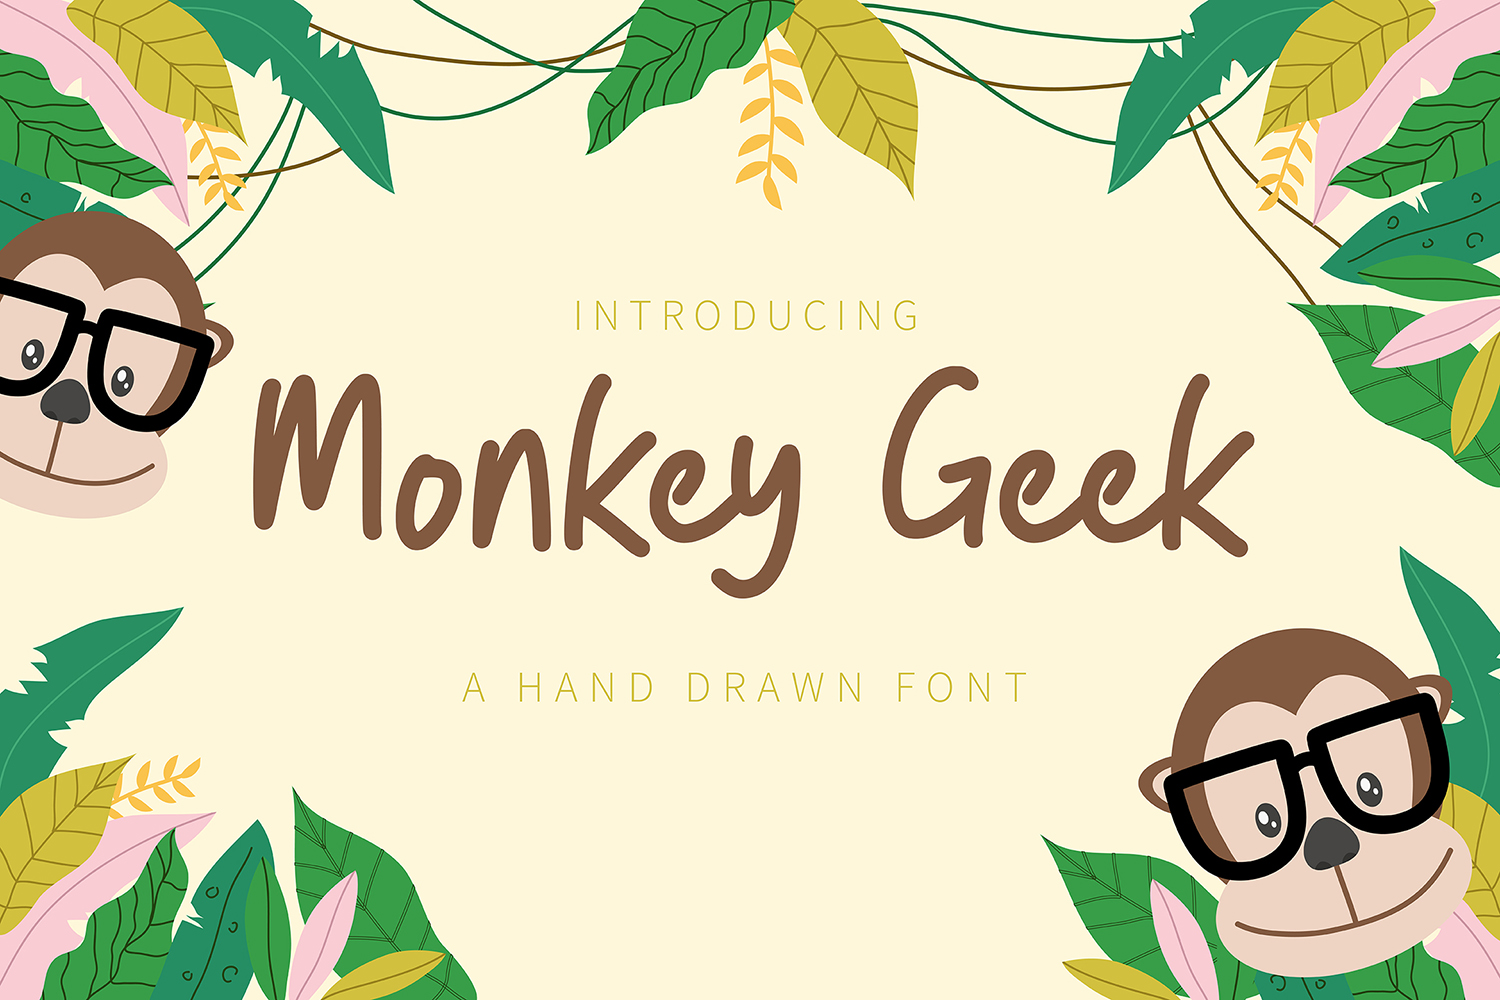 Monkey Geek Free Font